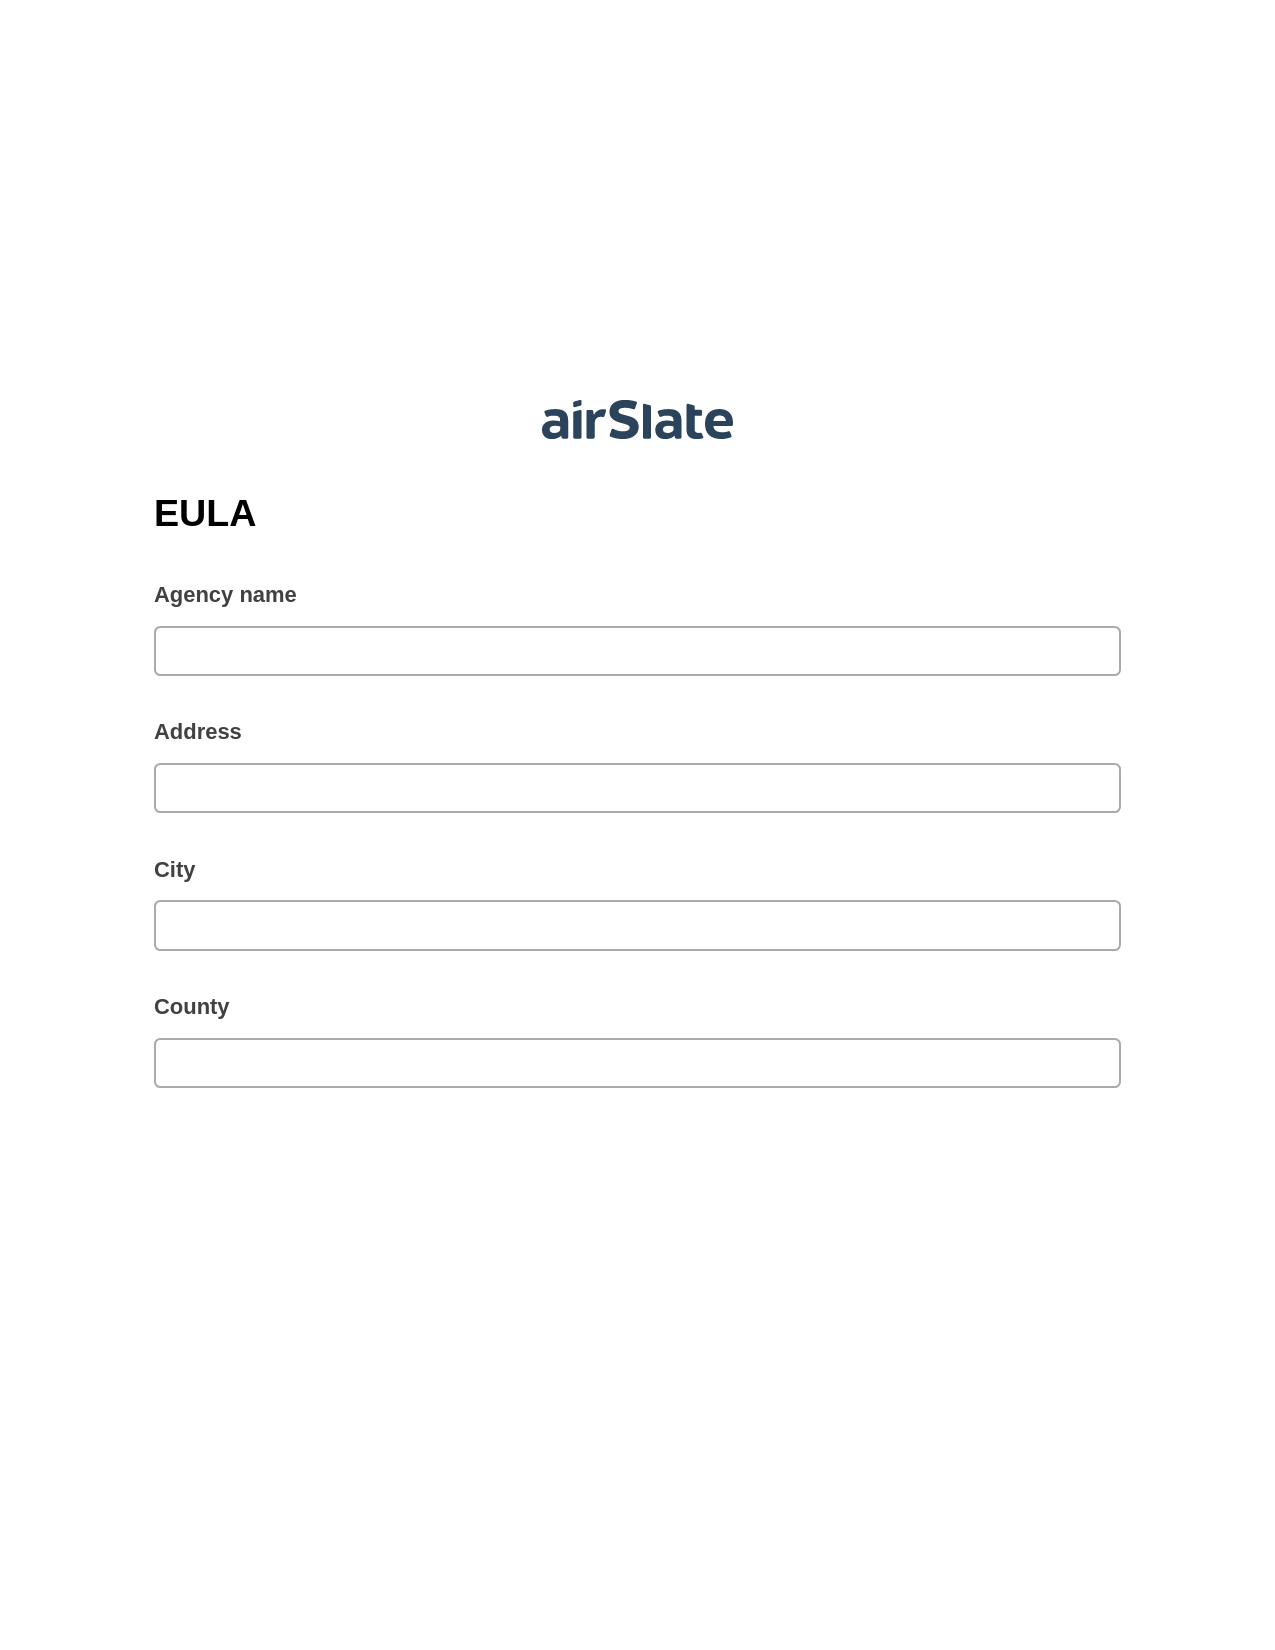 EULA Pre-fill from another Slate Bot, Google Calendar Bot, Dropbox Bot